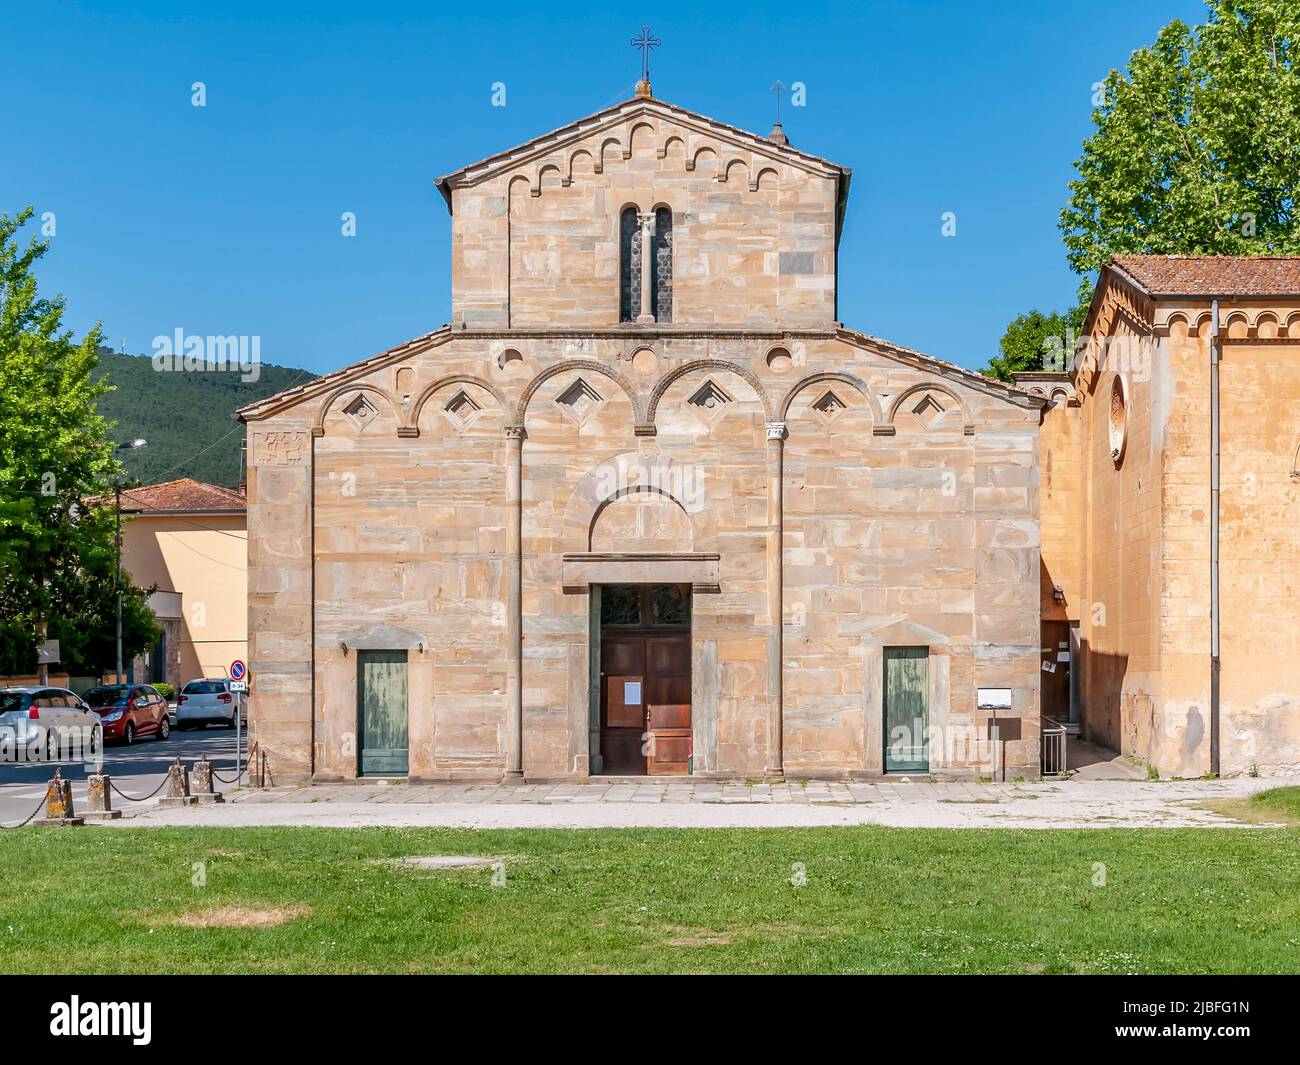 La facciata dell'antica Pieve di Santa Maria a Vicopisano, Pisa, Italia Foto Stock